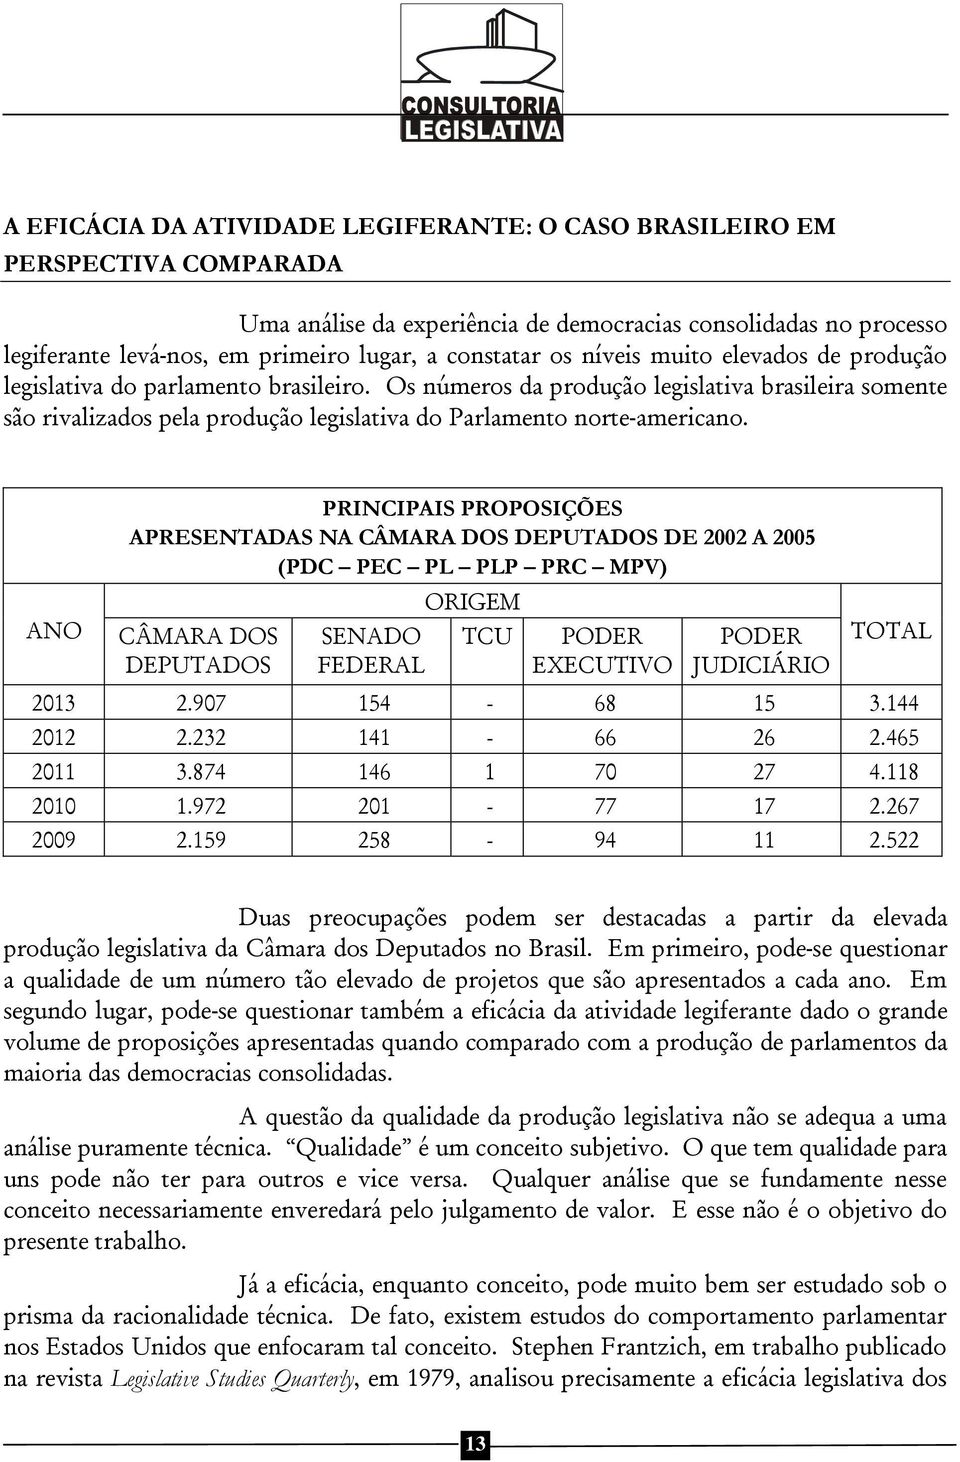 Os números da produção legislativa brasileira somente são rivalizados pela produção legislativa do Parlamento norte-americano.